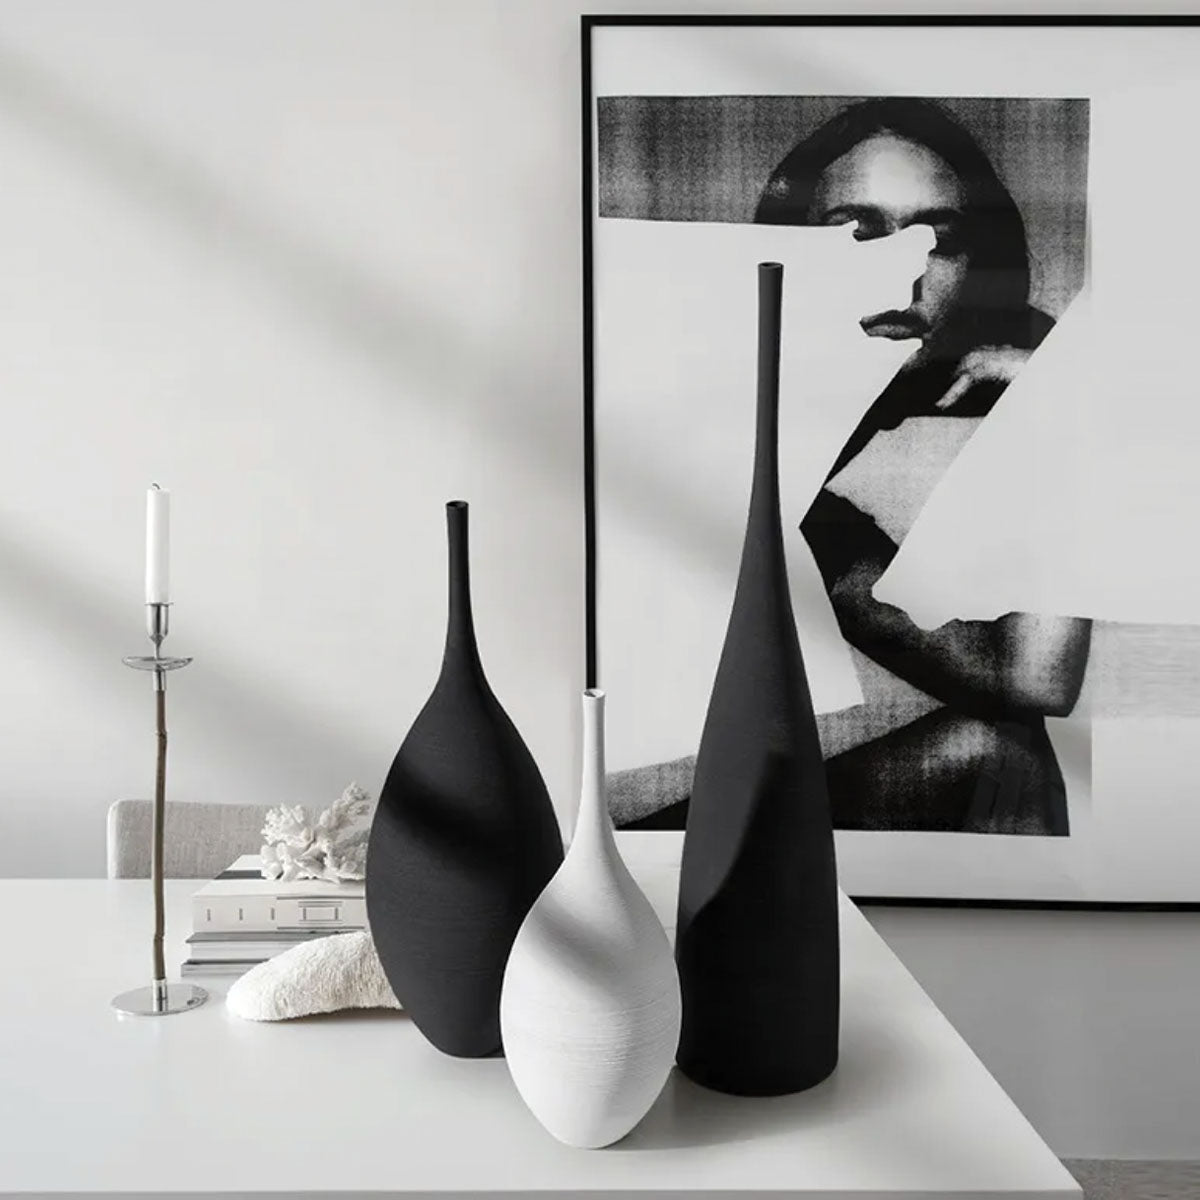 Osram-Keramik-Vase